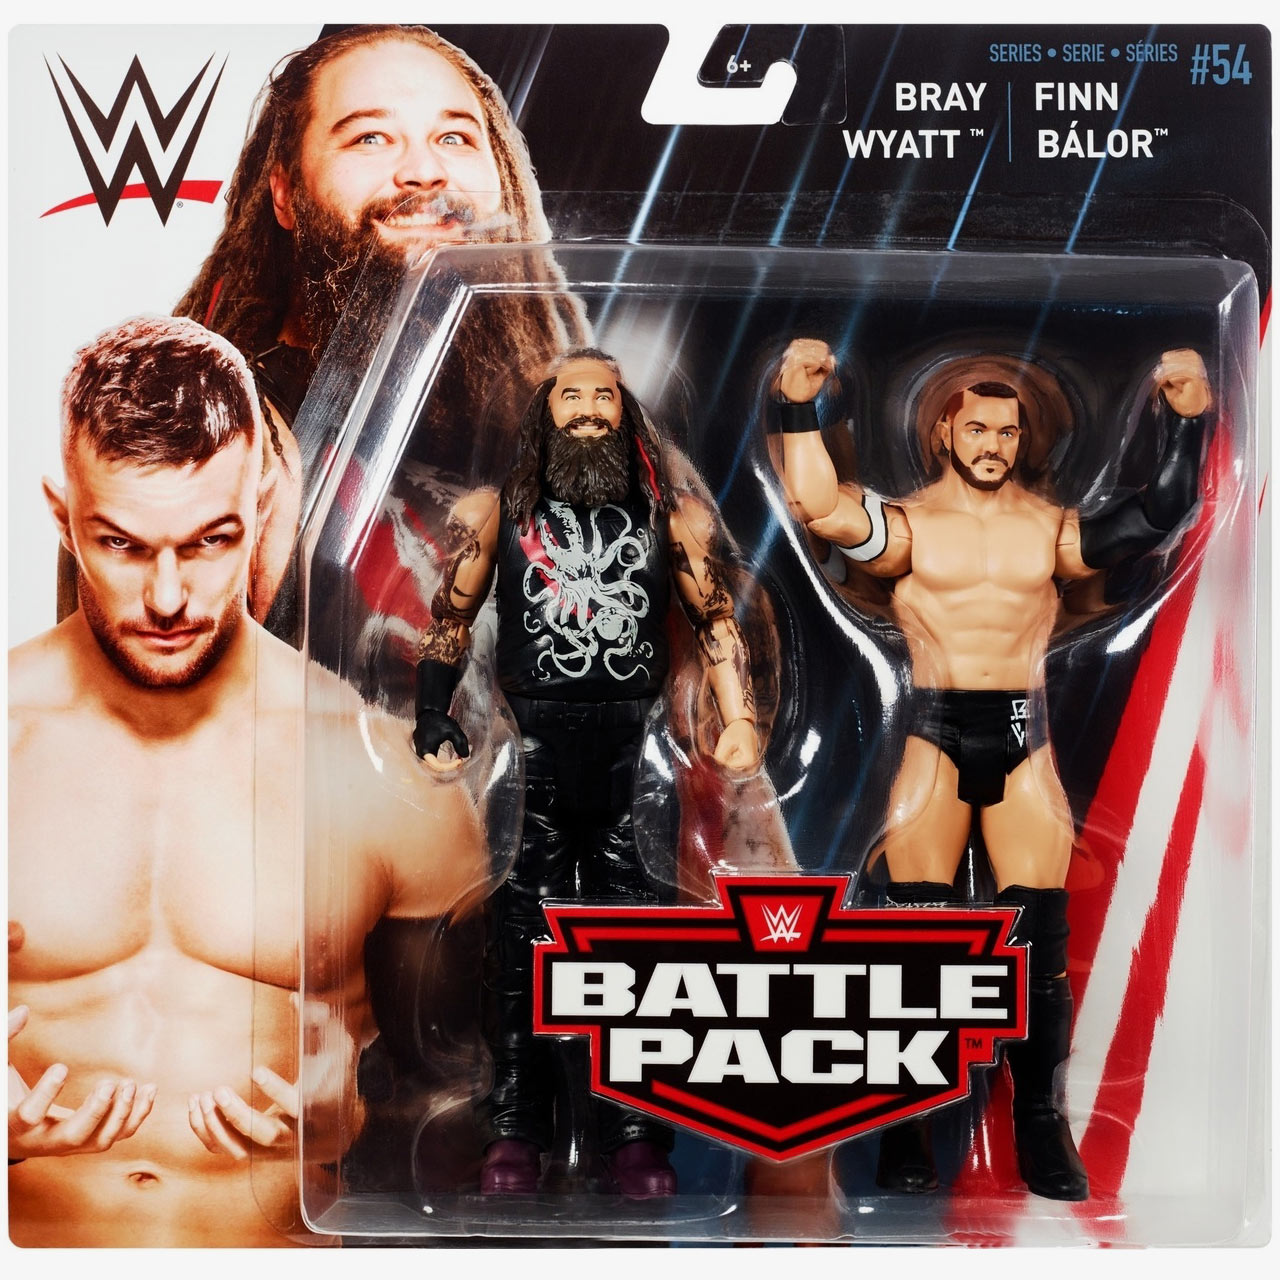 Bray Wyatt & Finn Balor - WWE Battle Pack Series #54